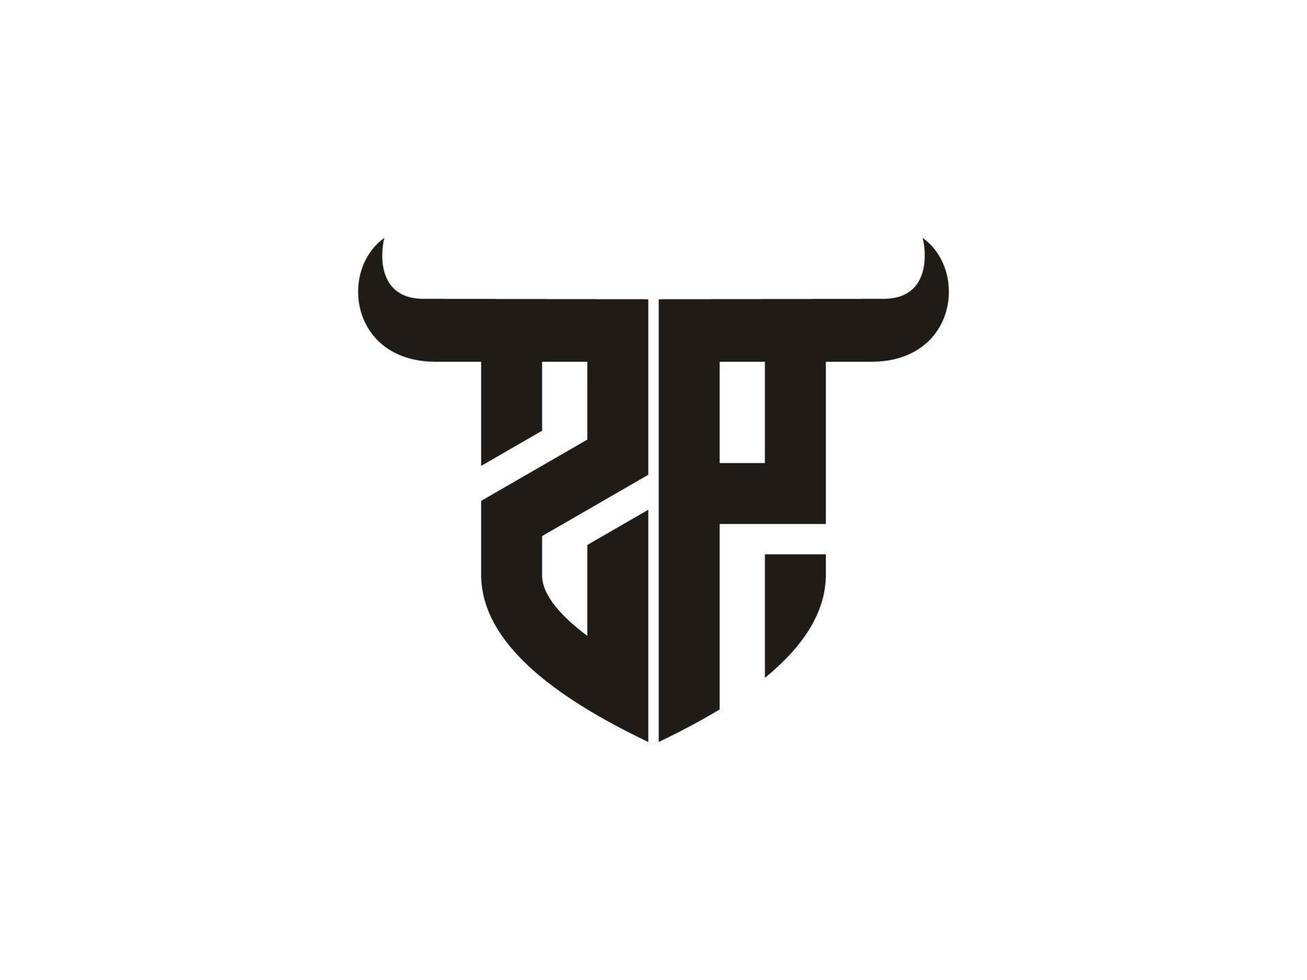 création initiale du logo zp bull. vecteur